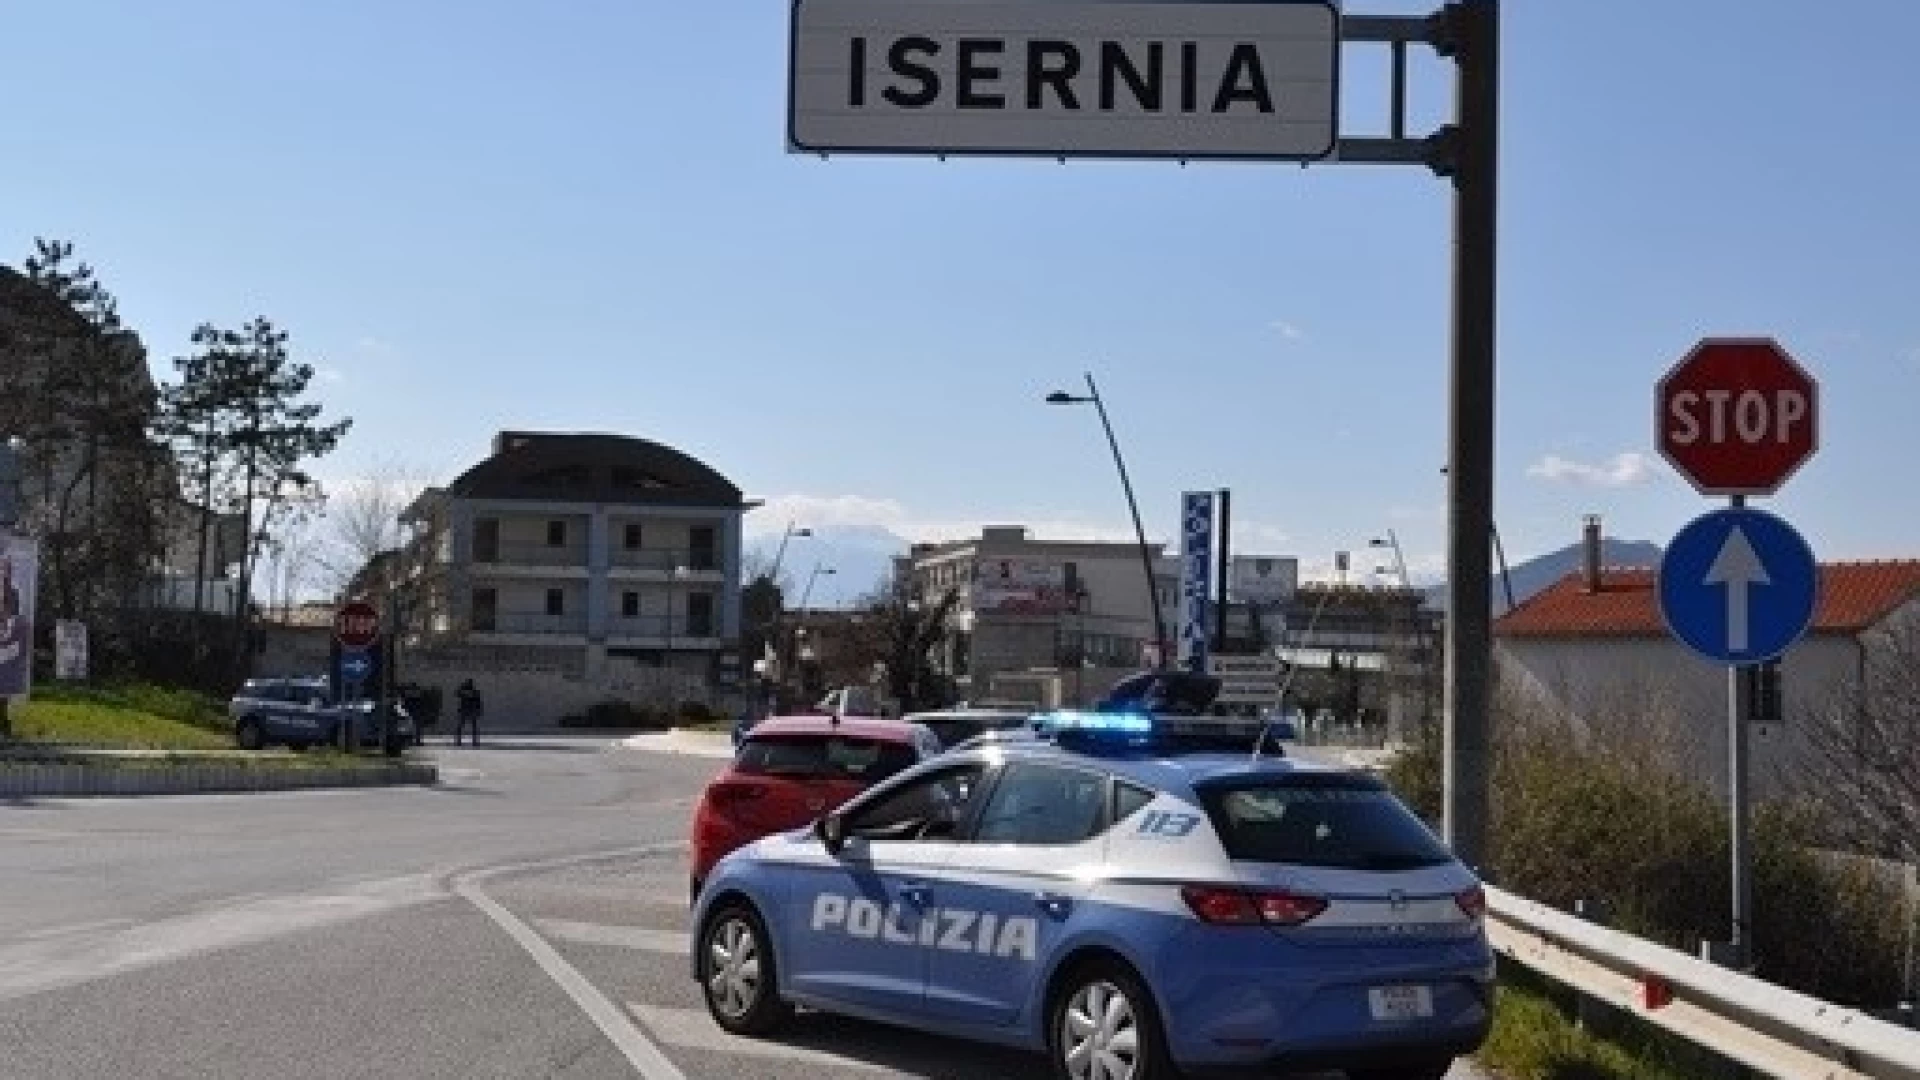 Isernia: La Polizia di Stato intensifica i controlli in città e in Provincia.